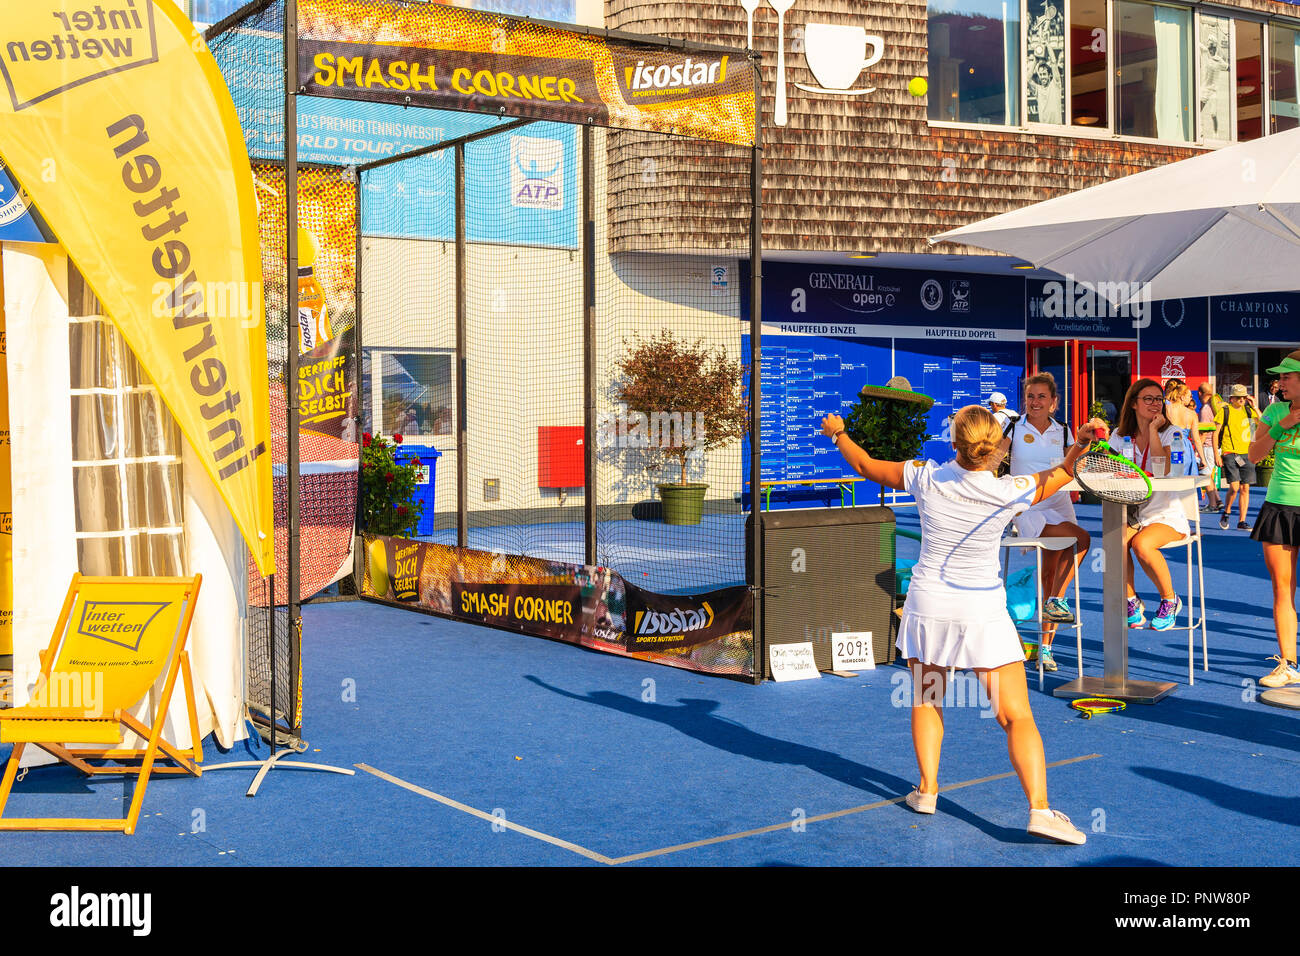 KITZBUHEL, Austria - Agosto 2, 2018: giovane donna che serve durante il periodo estivo il torneo di tennis in dalla città di Kitzbuhel, Tirolo. Questo concorso è sapere come o austriaco Foto Stock